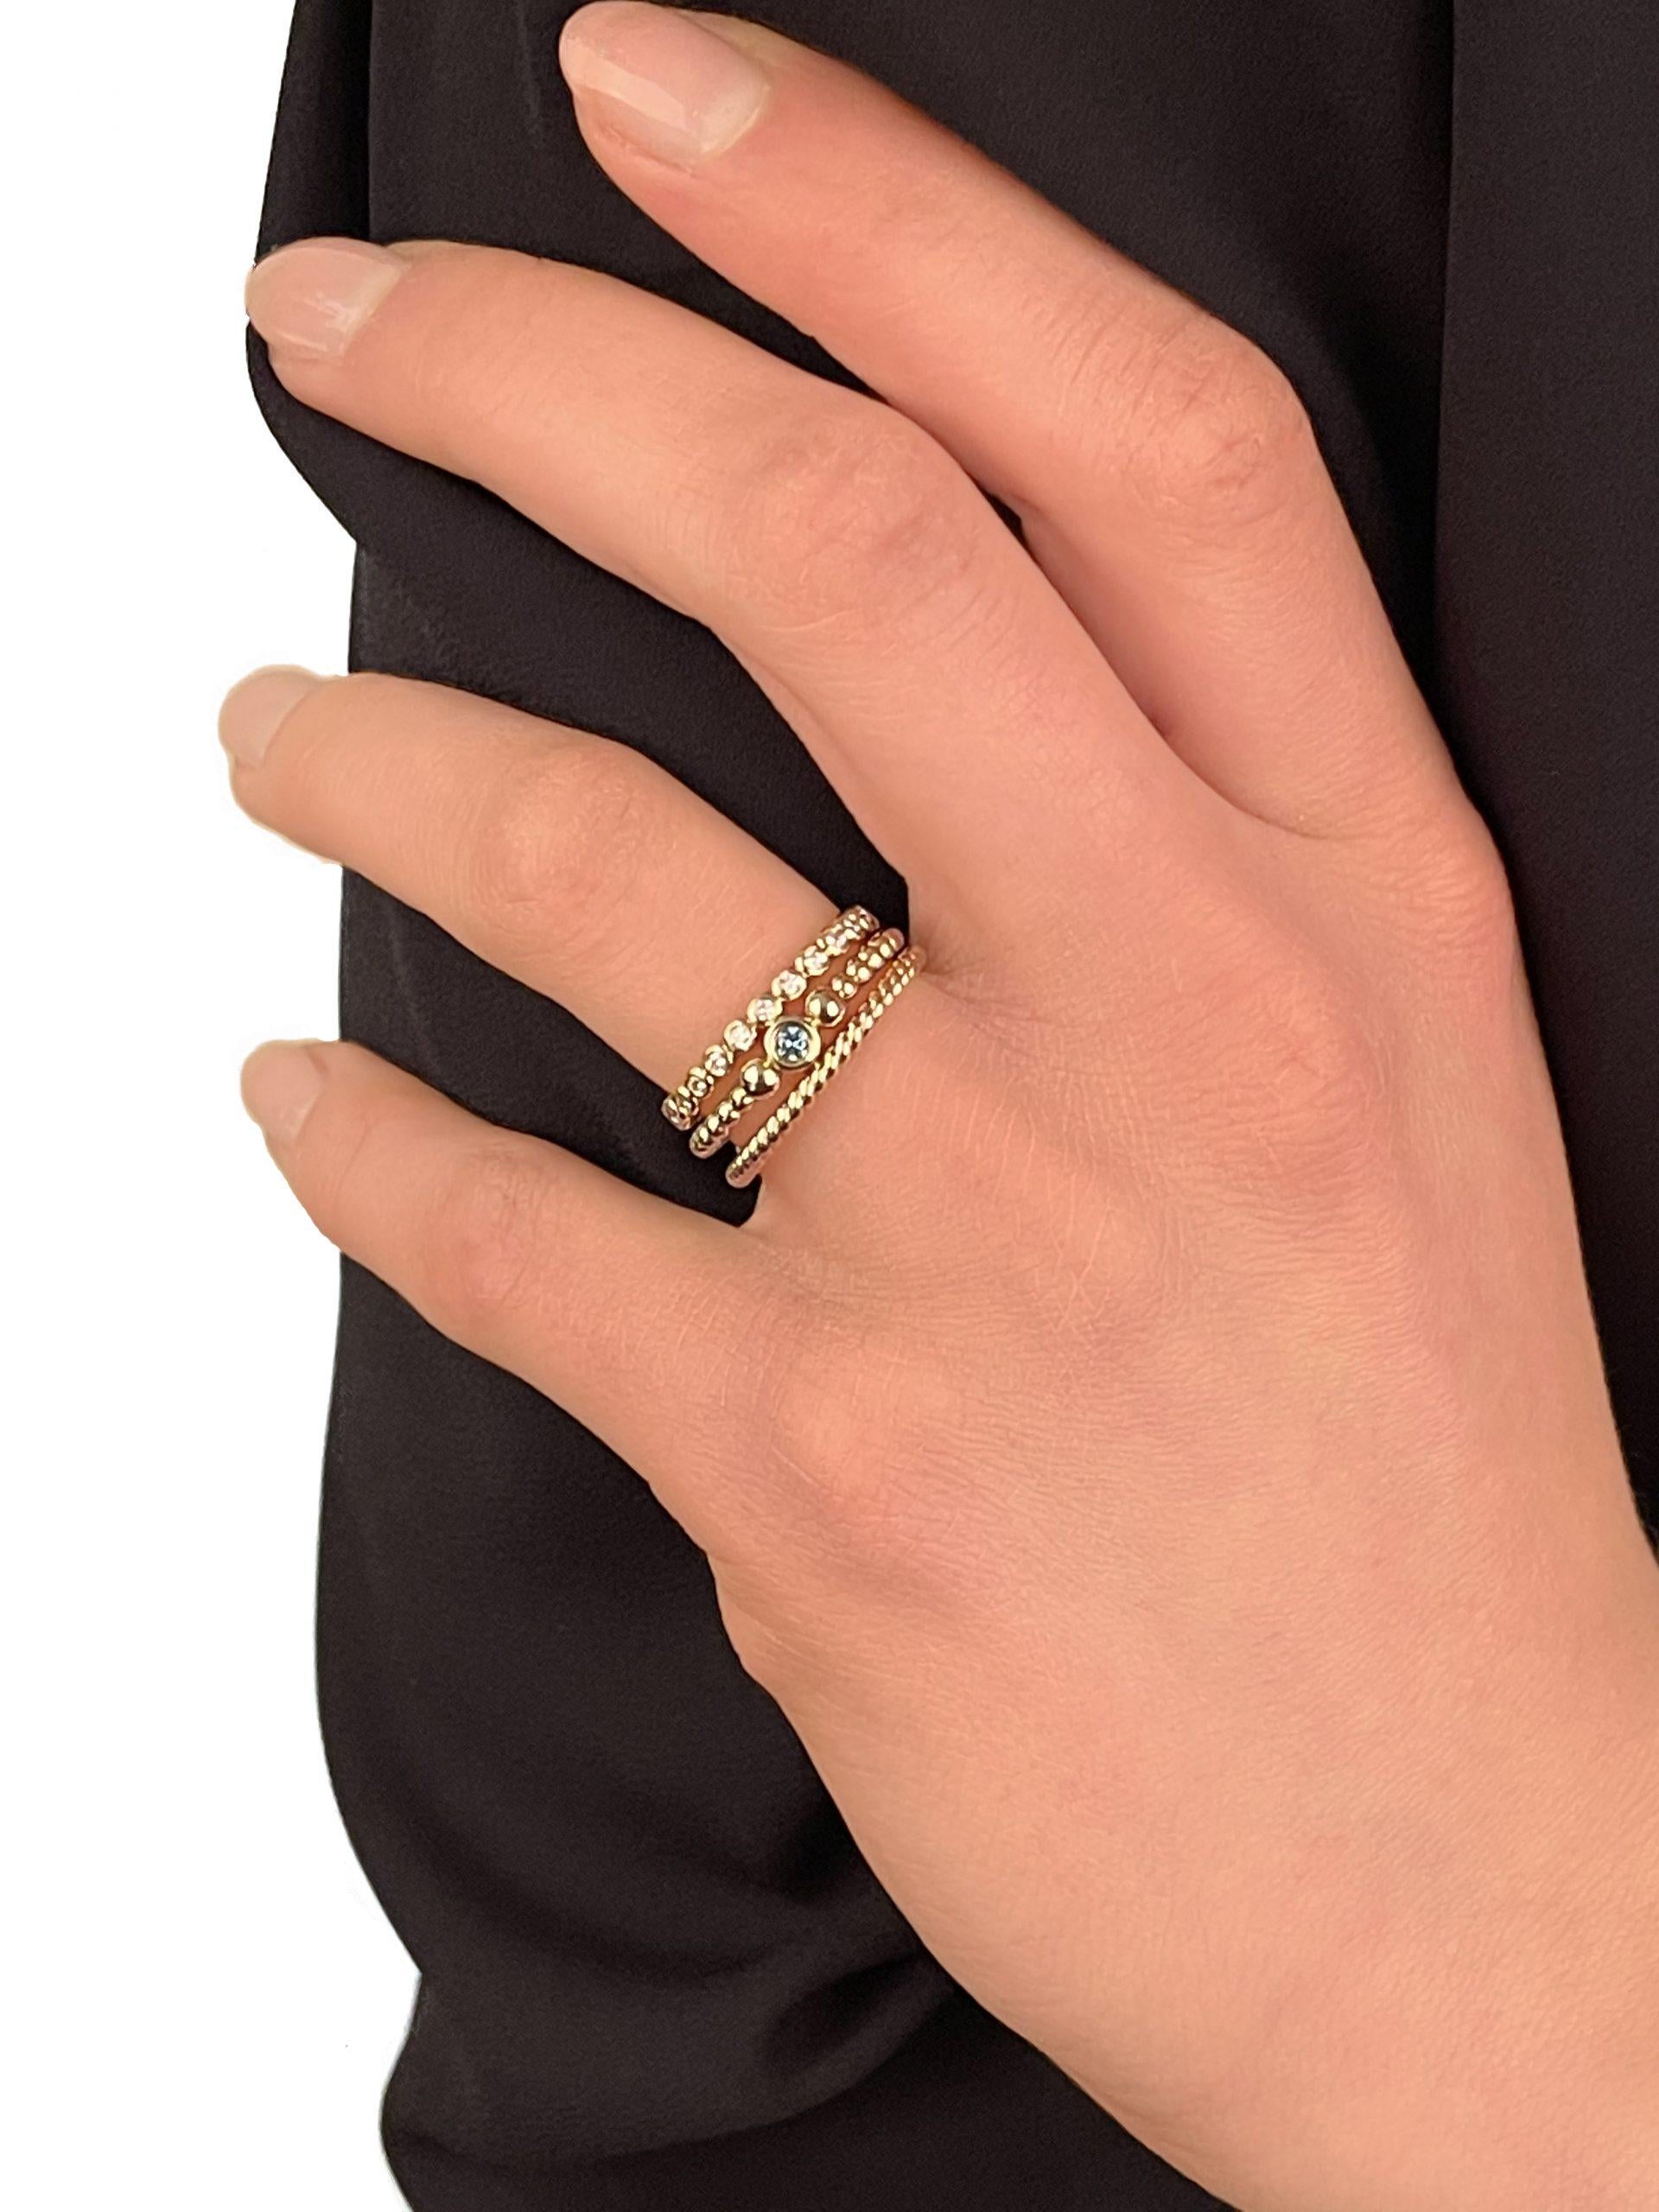 For Sale:   Cober Ibiza “Princess” set with Diamonds Made of 14 Carat fairtrade Gold Ring 2